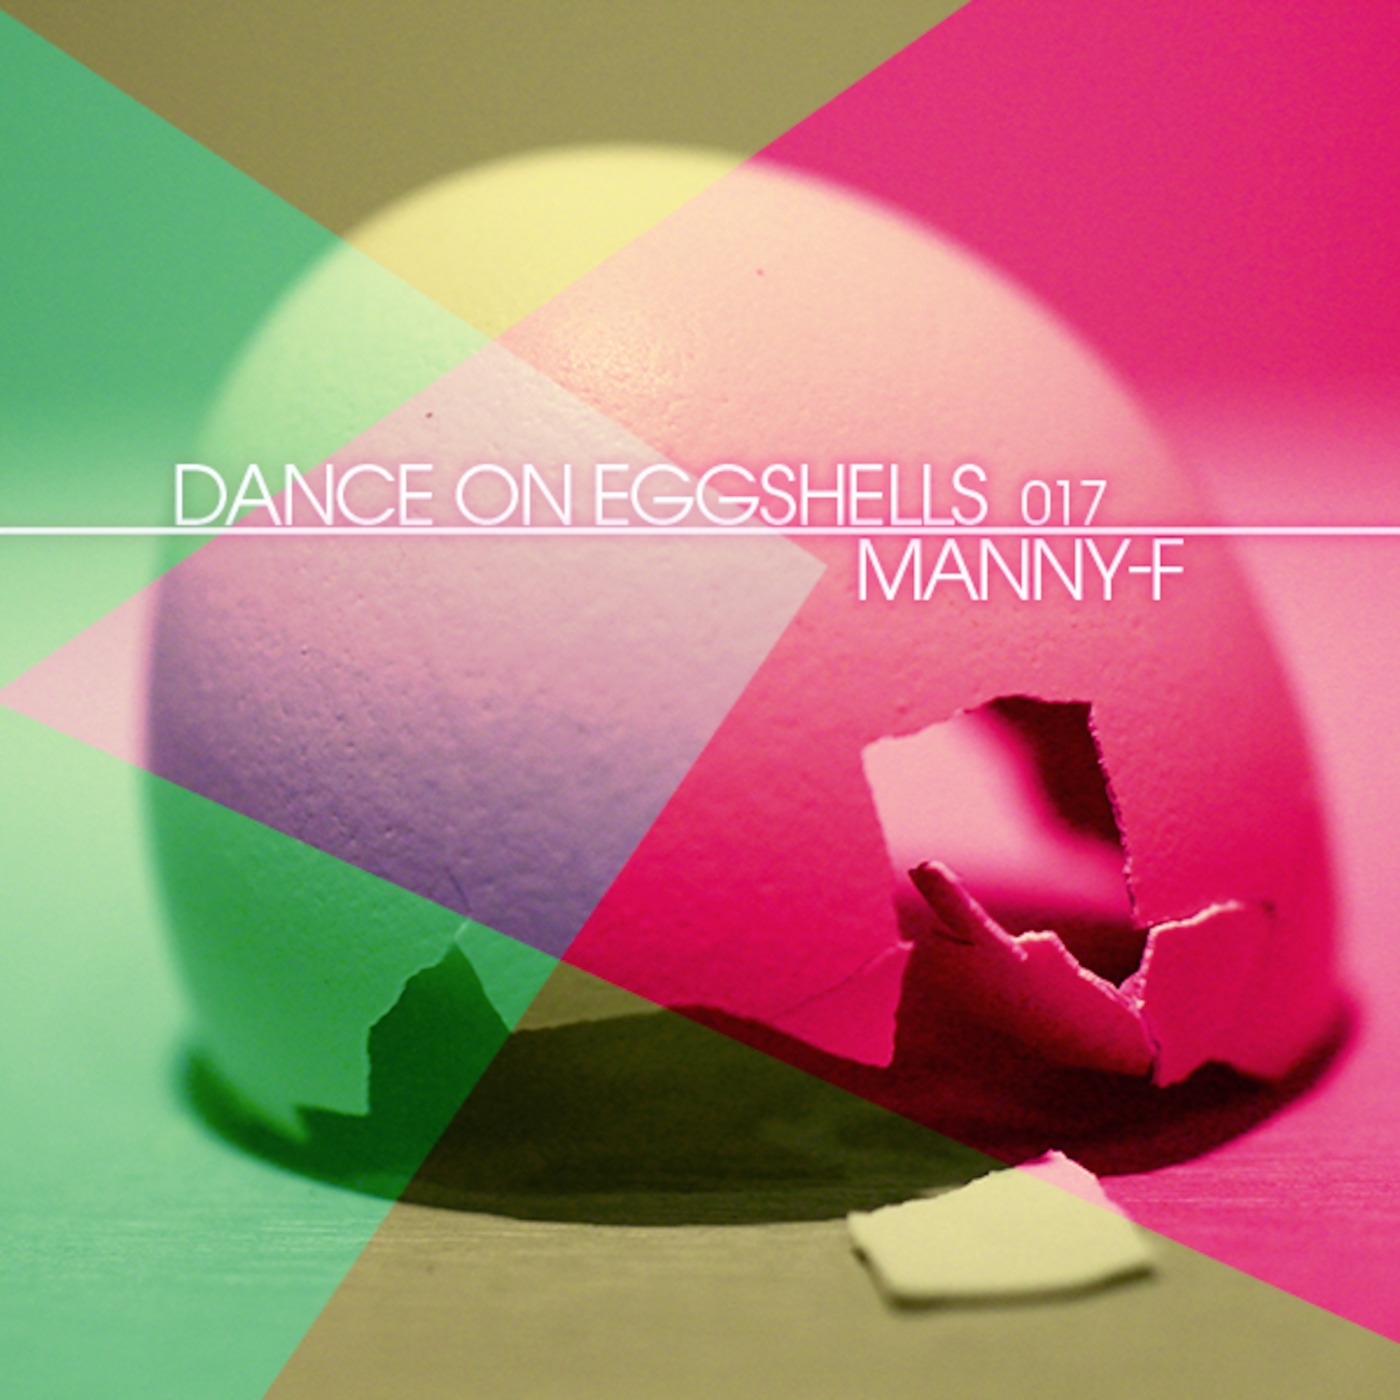 Dance On Eggshells 017 - Manny-F